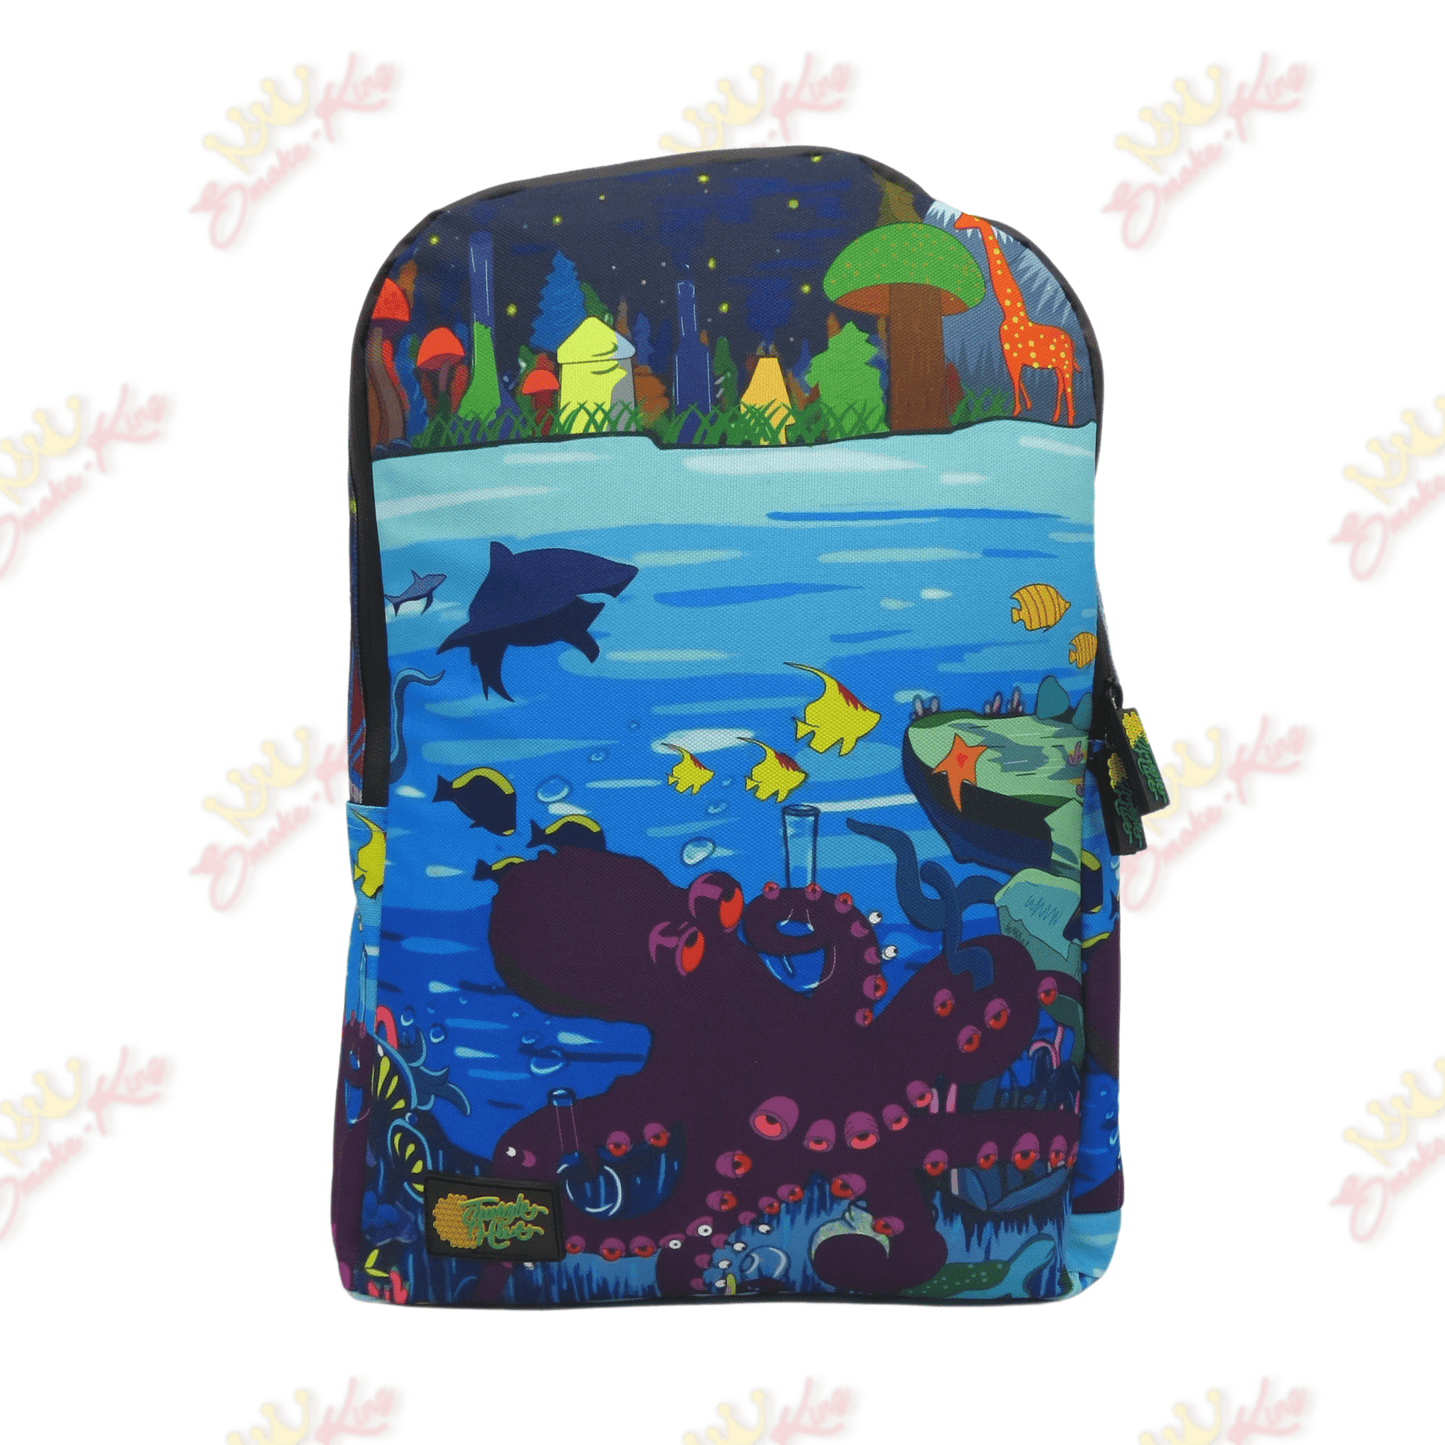 Sea Backpack